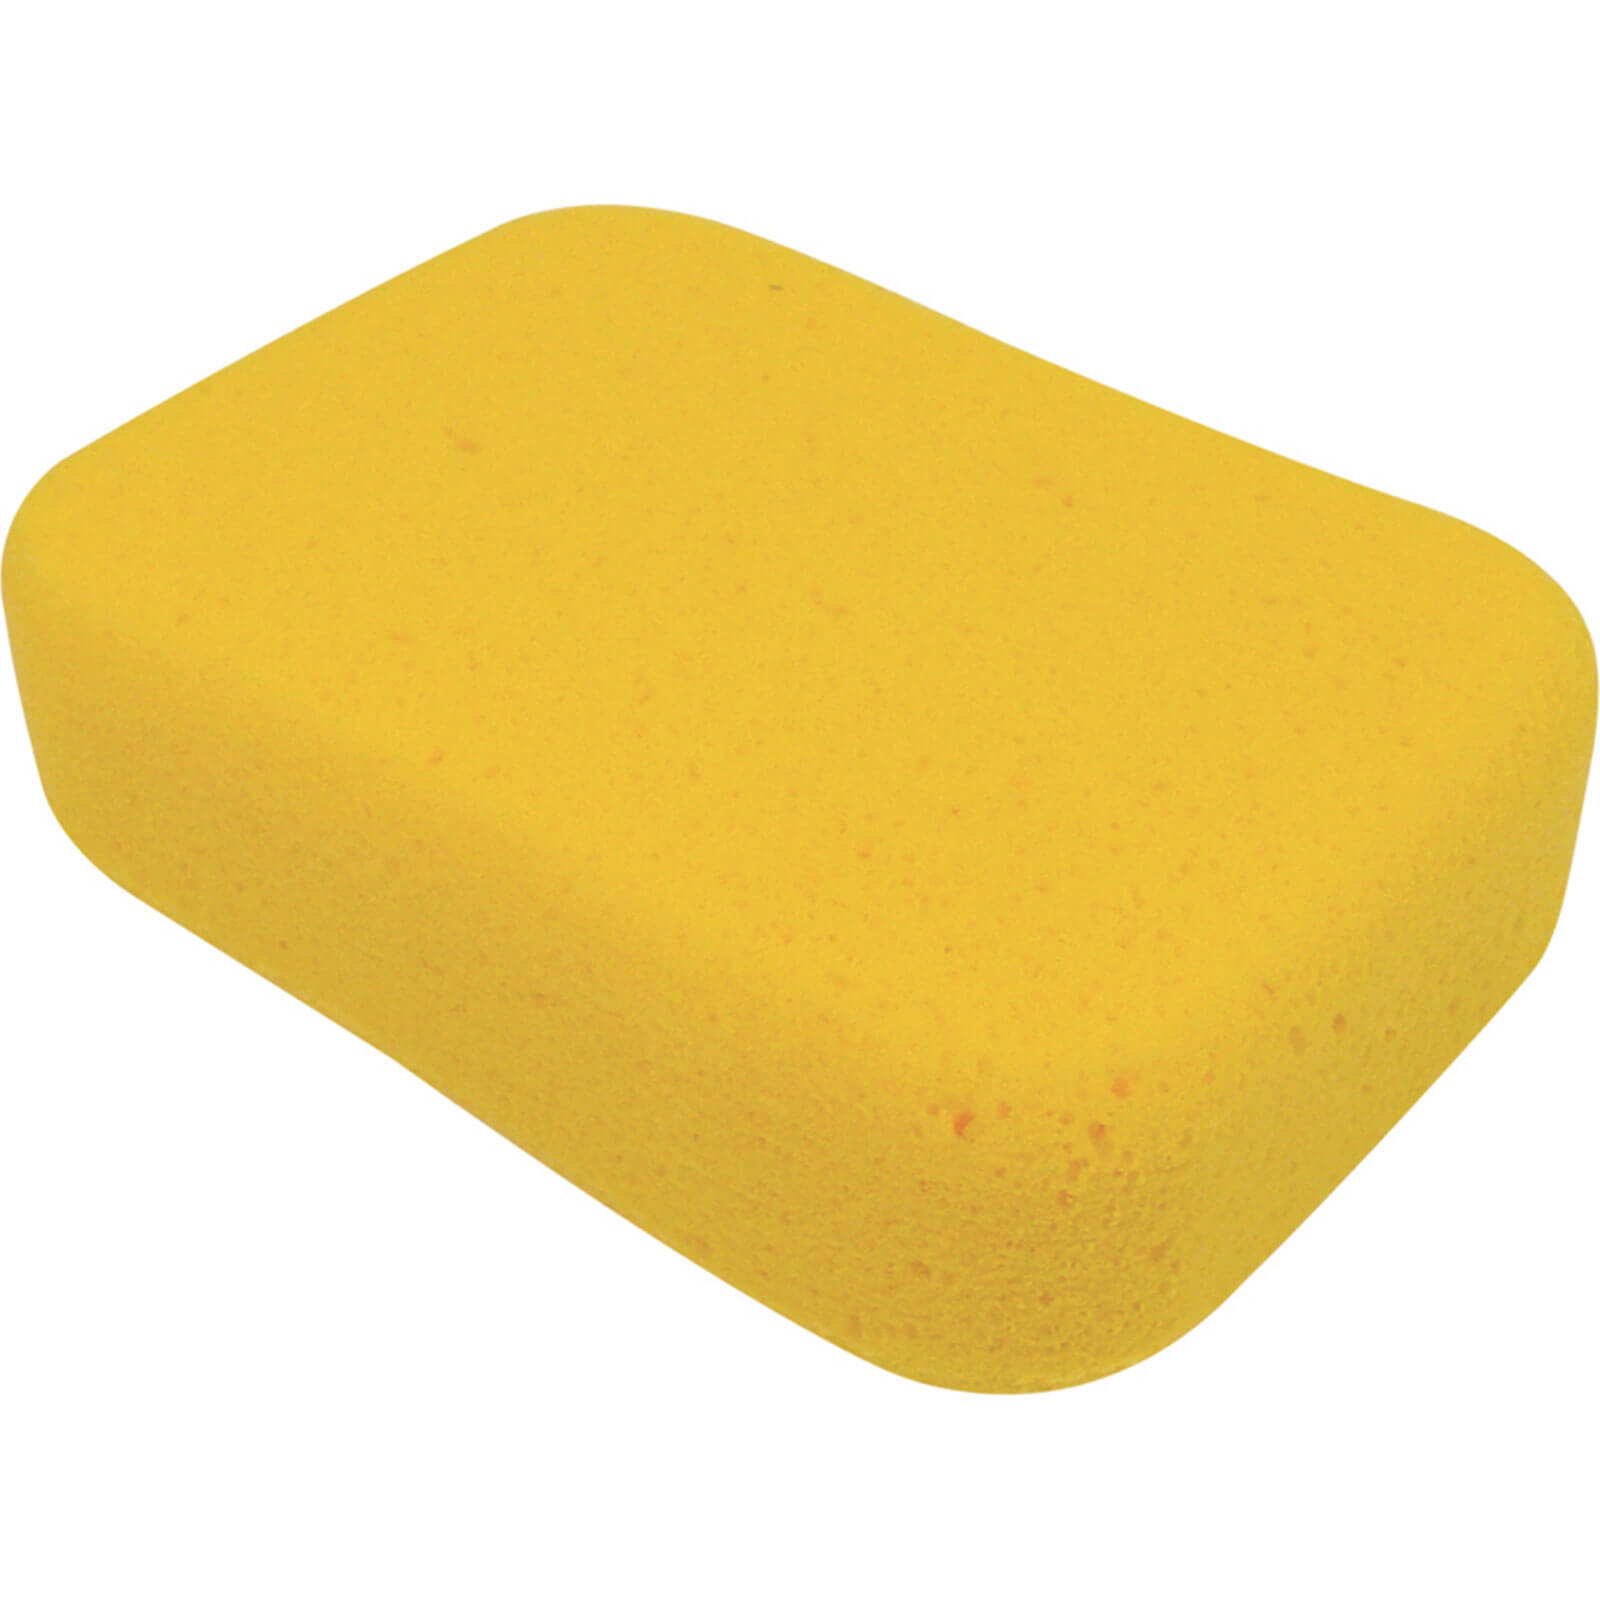 Image of Vitrex Tiling Sponge